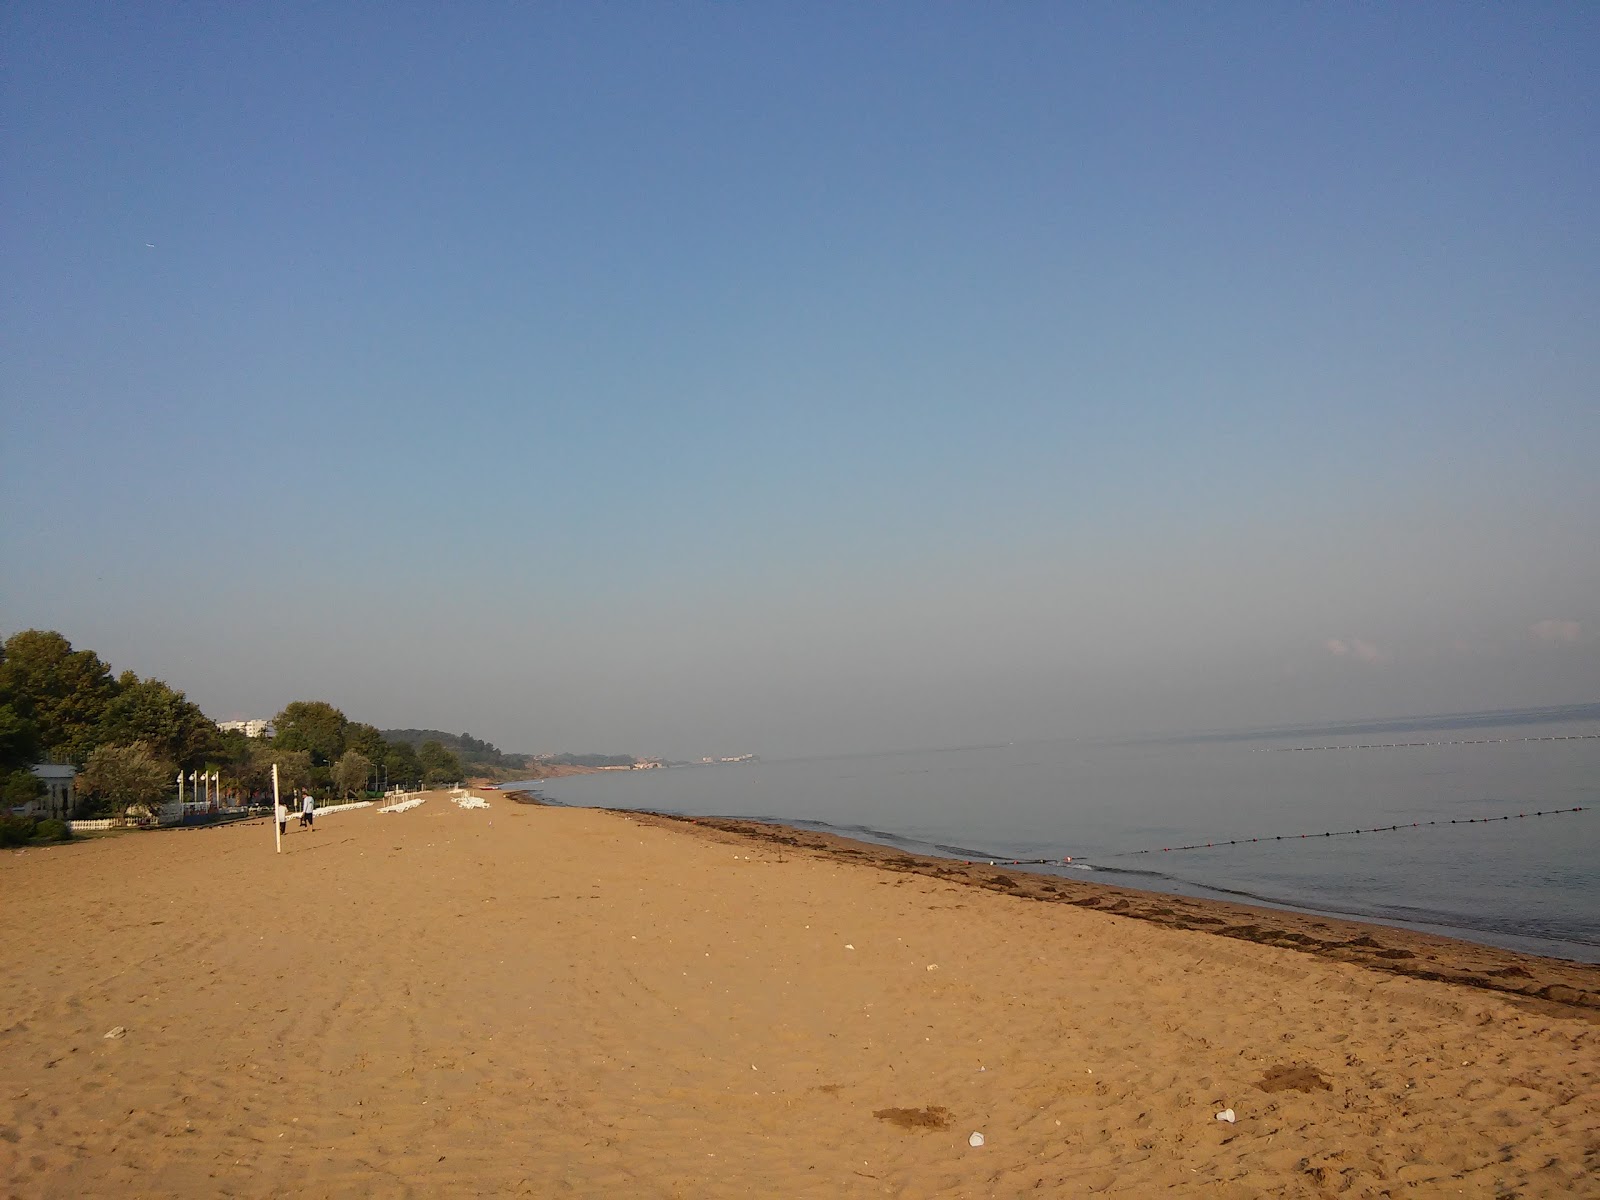 Foto di Yalova Plaji area del resort sulla spiaggia